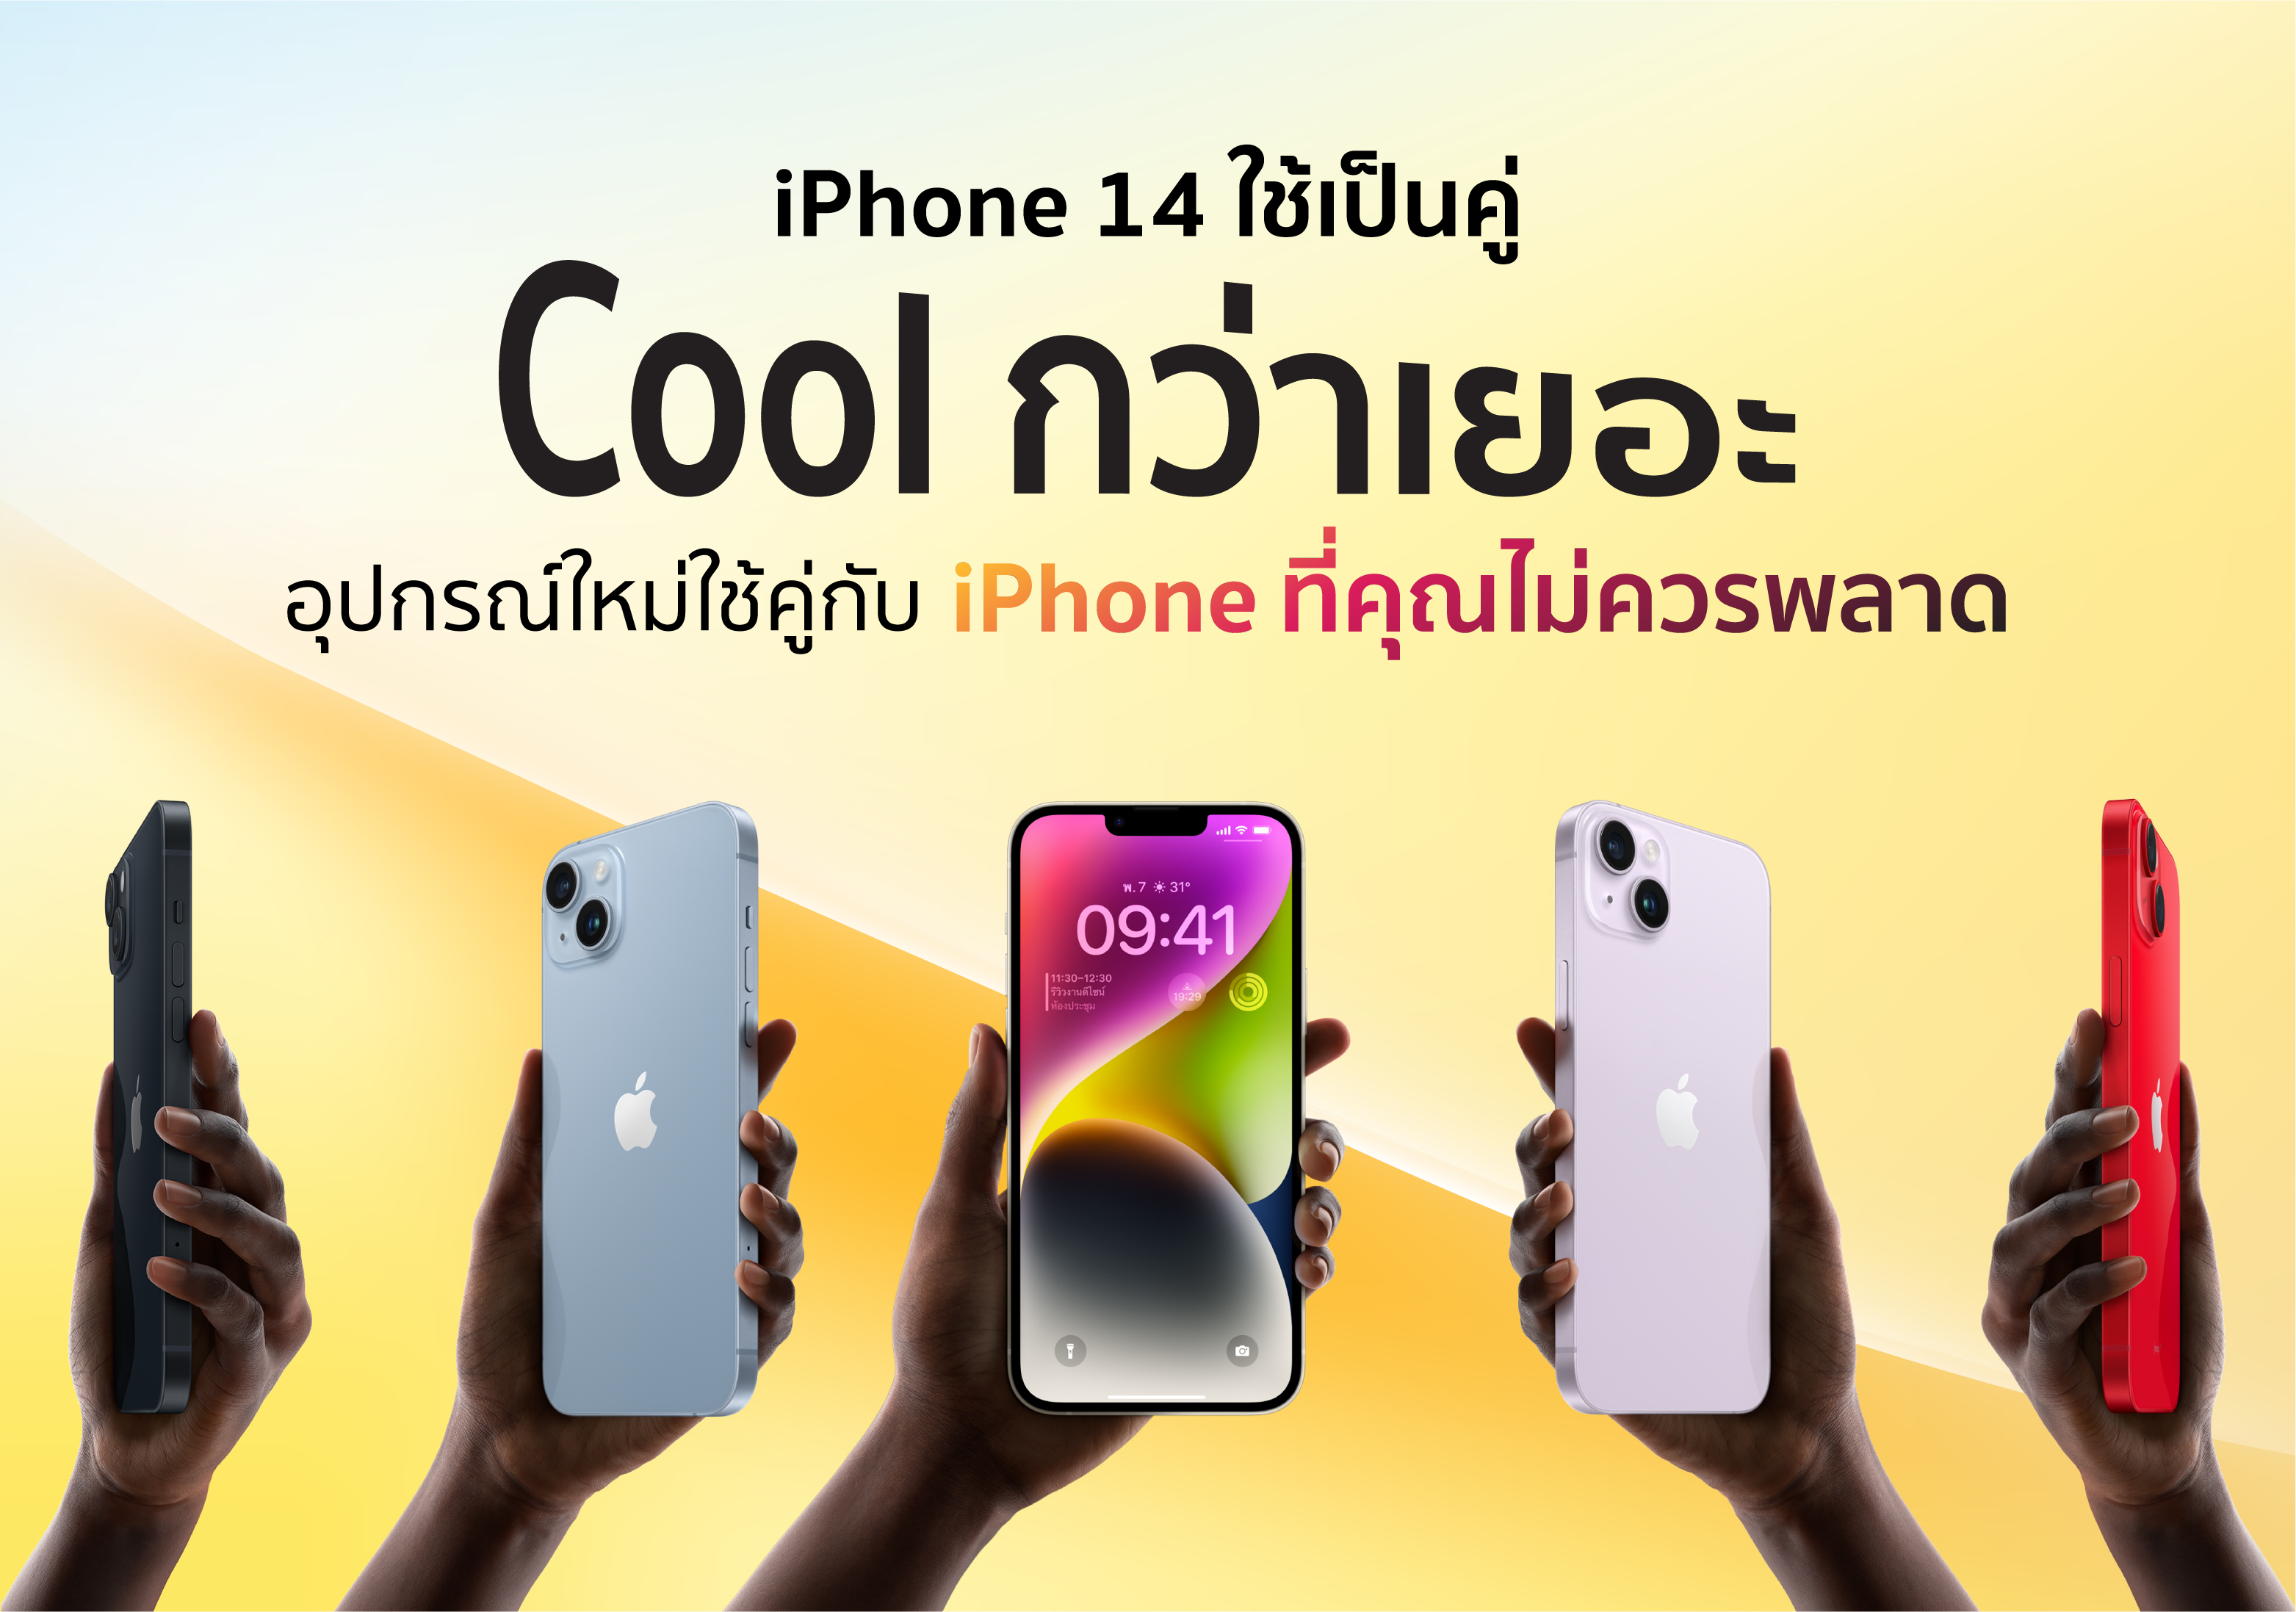 iPhone 14 ใช้เป็นคู่ Cool กว่าเยอะ แนะนำอุปกรณ์คู่กับ iPhone ที่ของมันต้องมี 